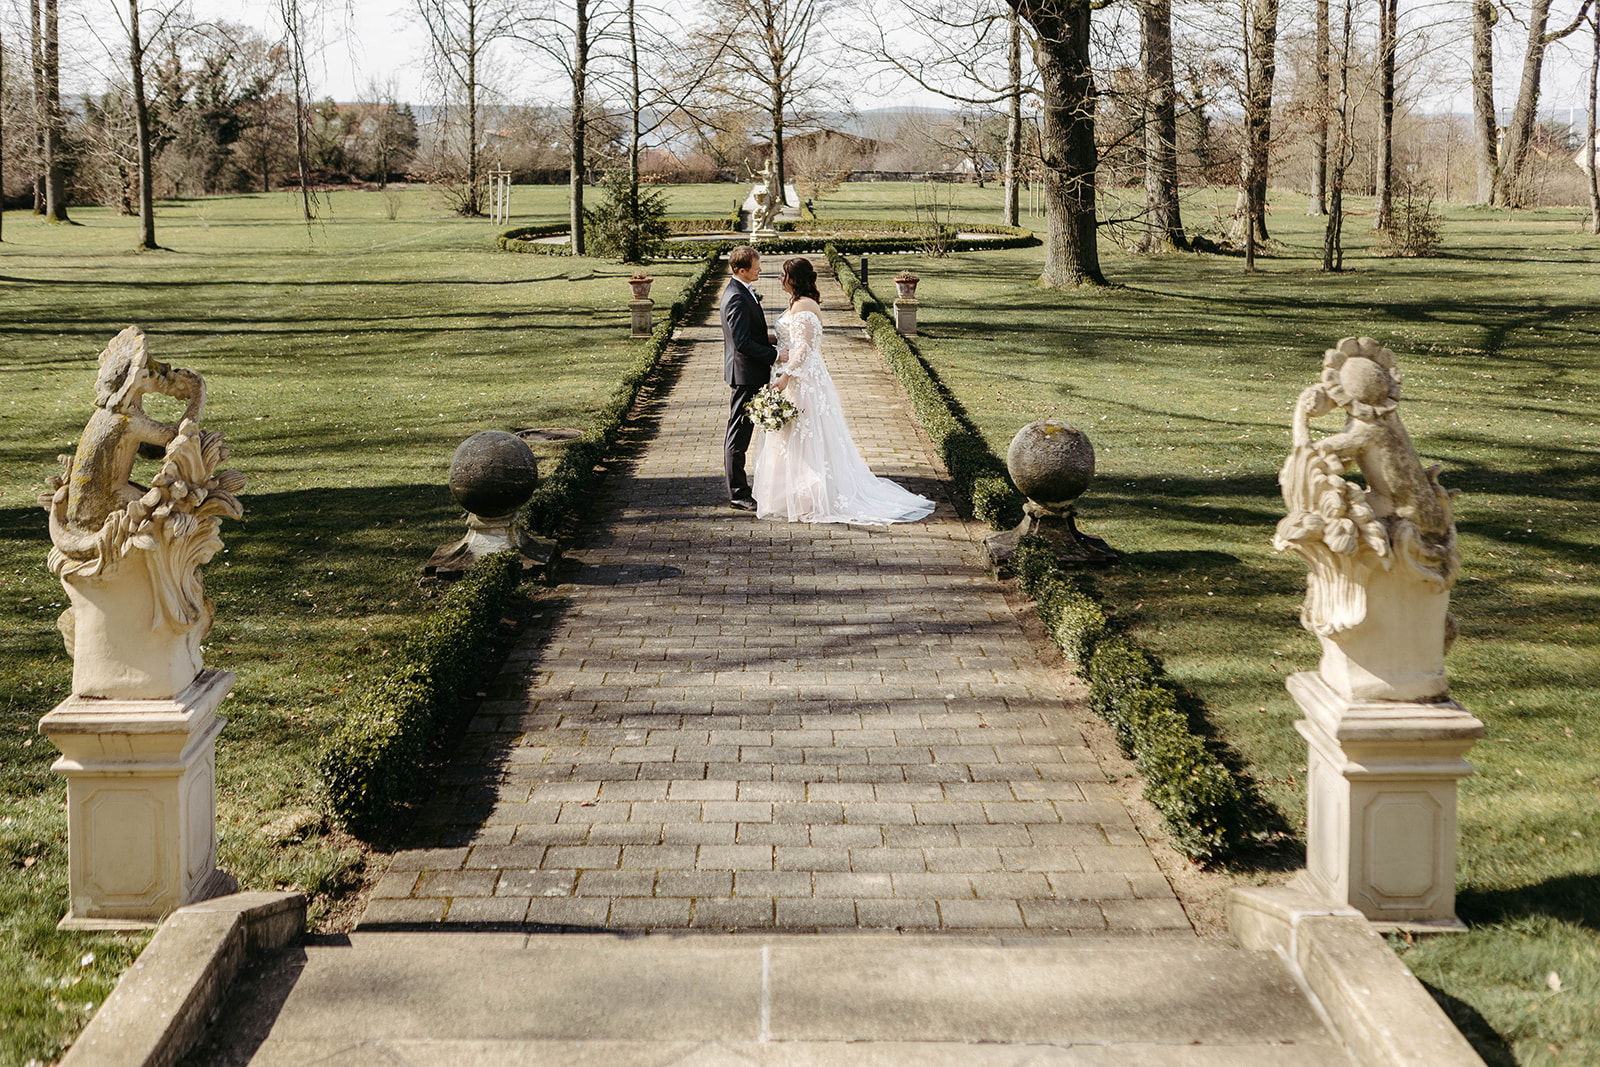 Romantische Kulisse: Das Paar verbringt liebevolle Augenblicke im idyllischen Schlossgarten